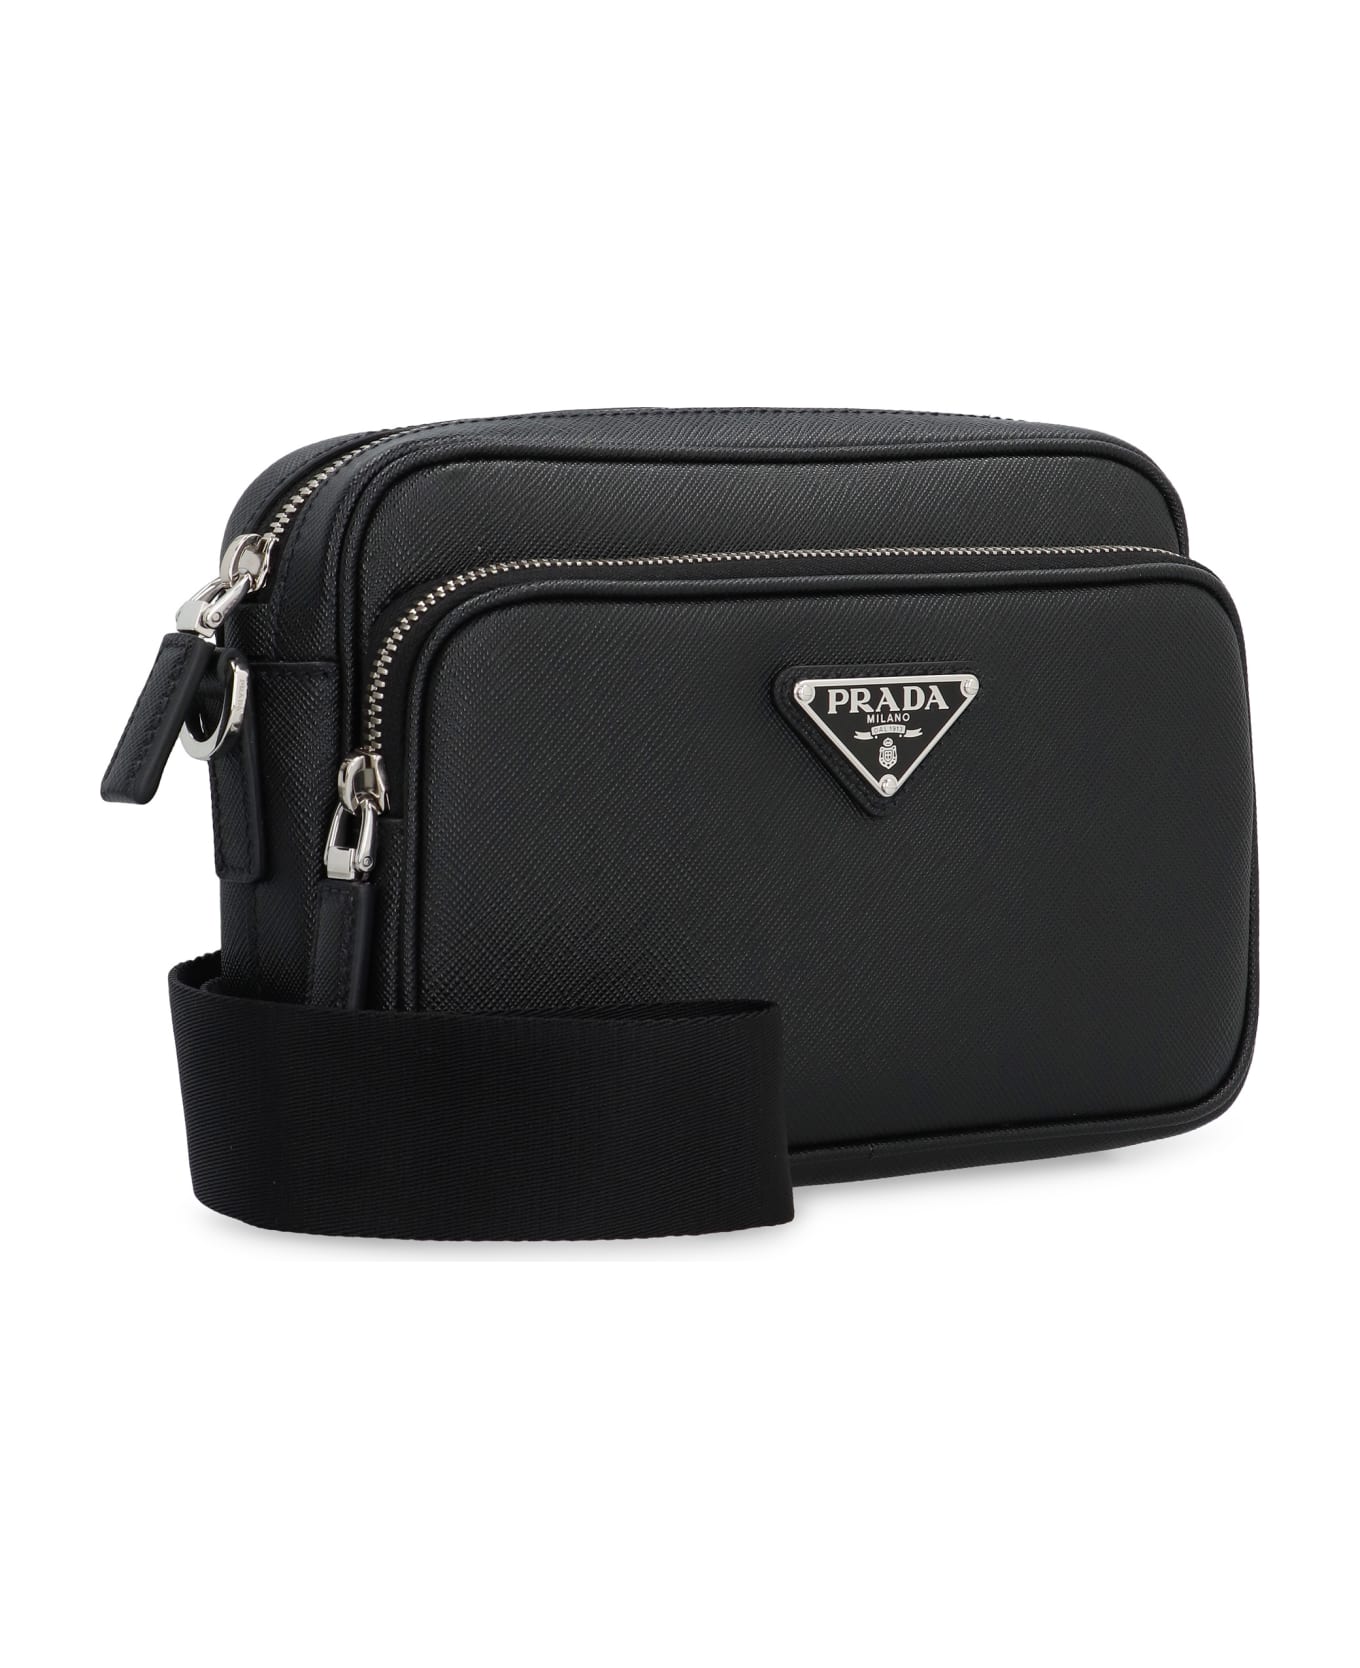 Prada Saffiano Leather Shoulder Bag - black